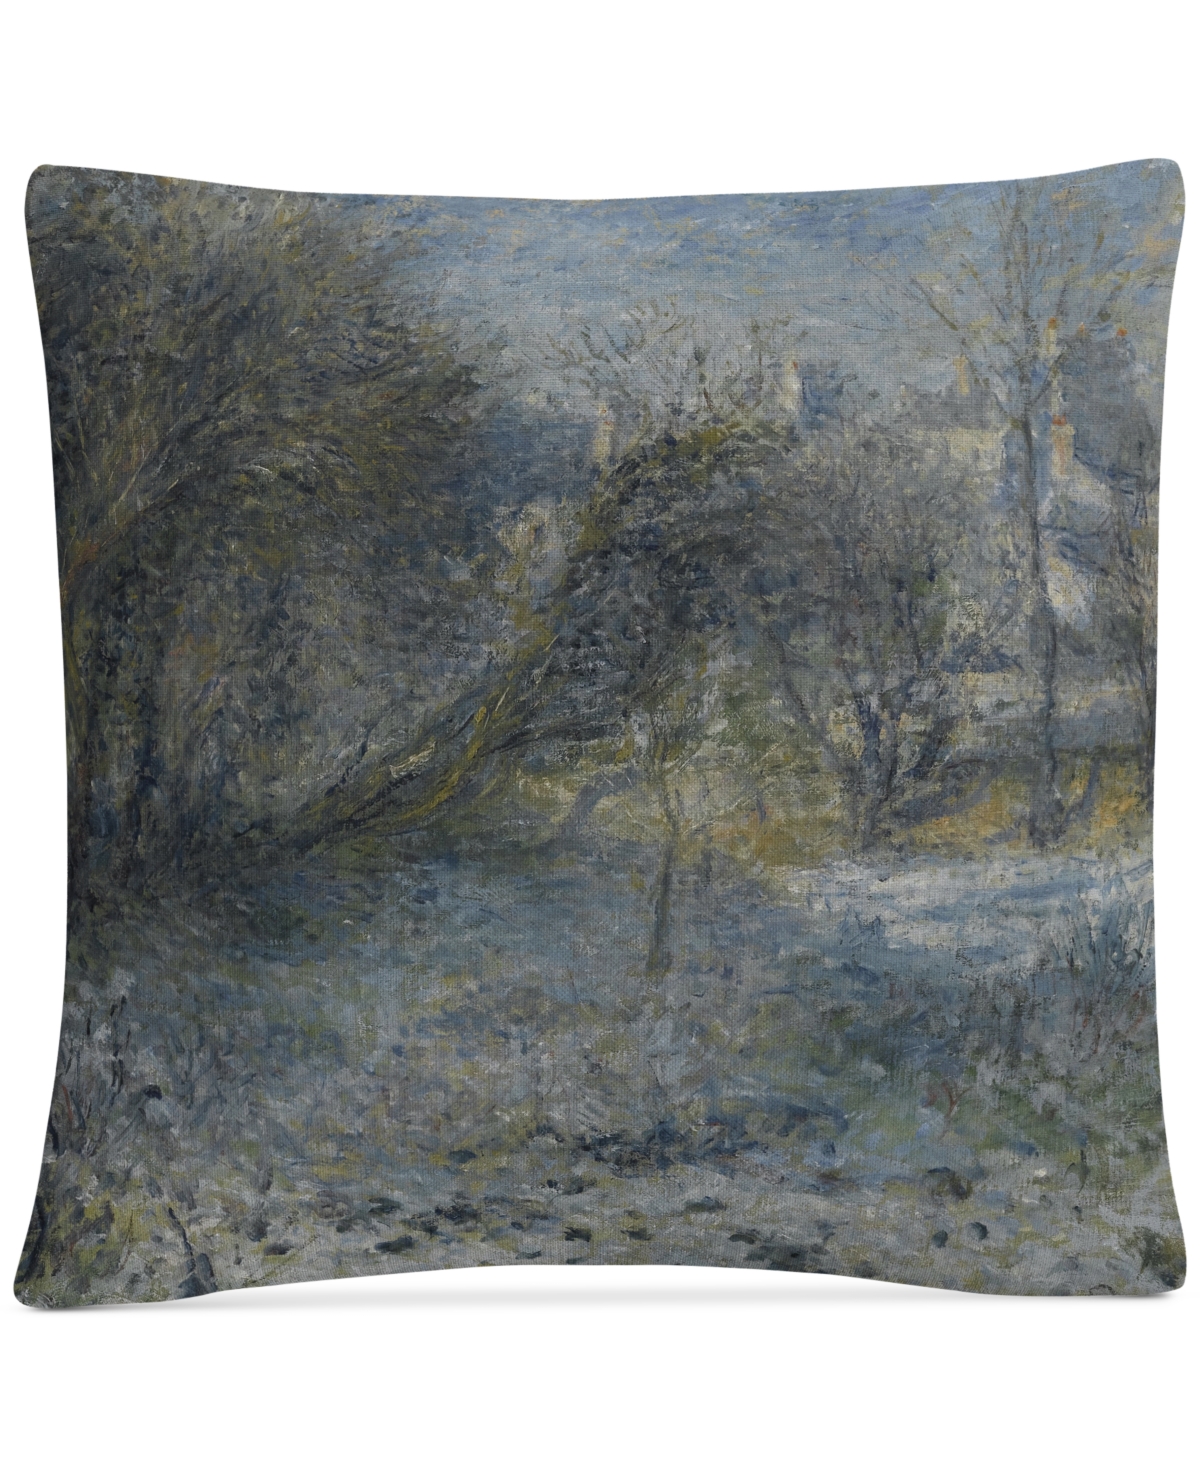 Pierre Renoir Snowy Landscape Decorative Pillow, 16 x 16